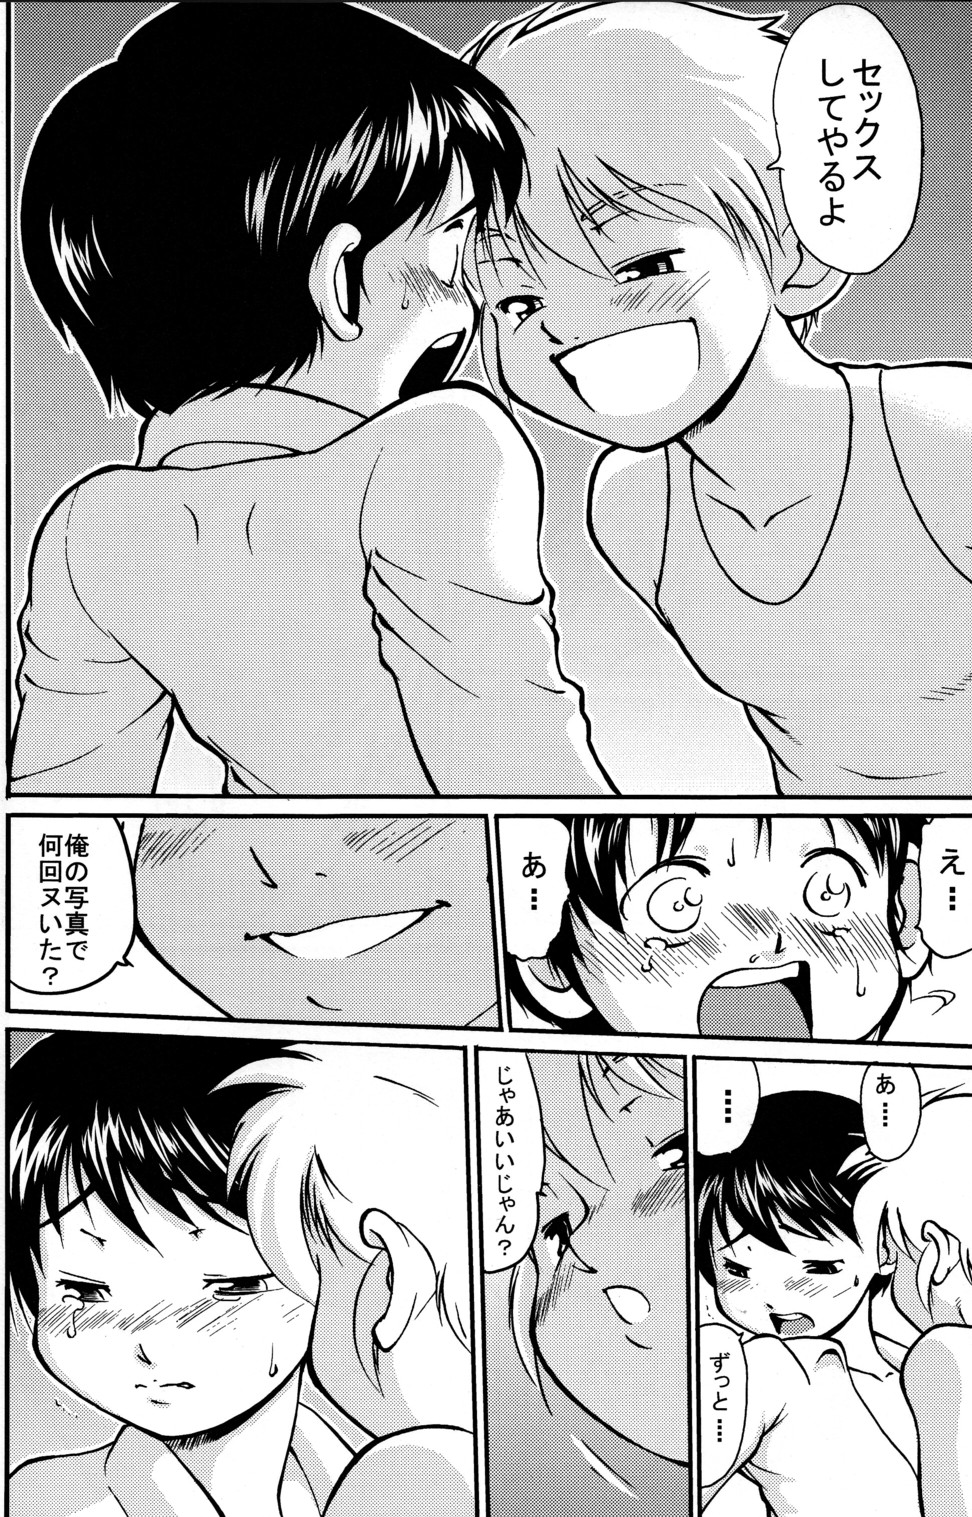 [Yuuji] Boys Life 1 page 14 full